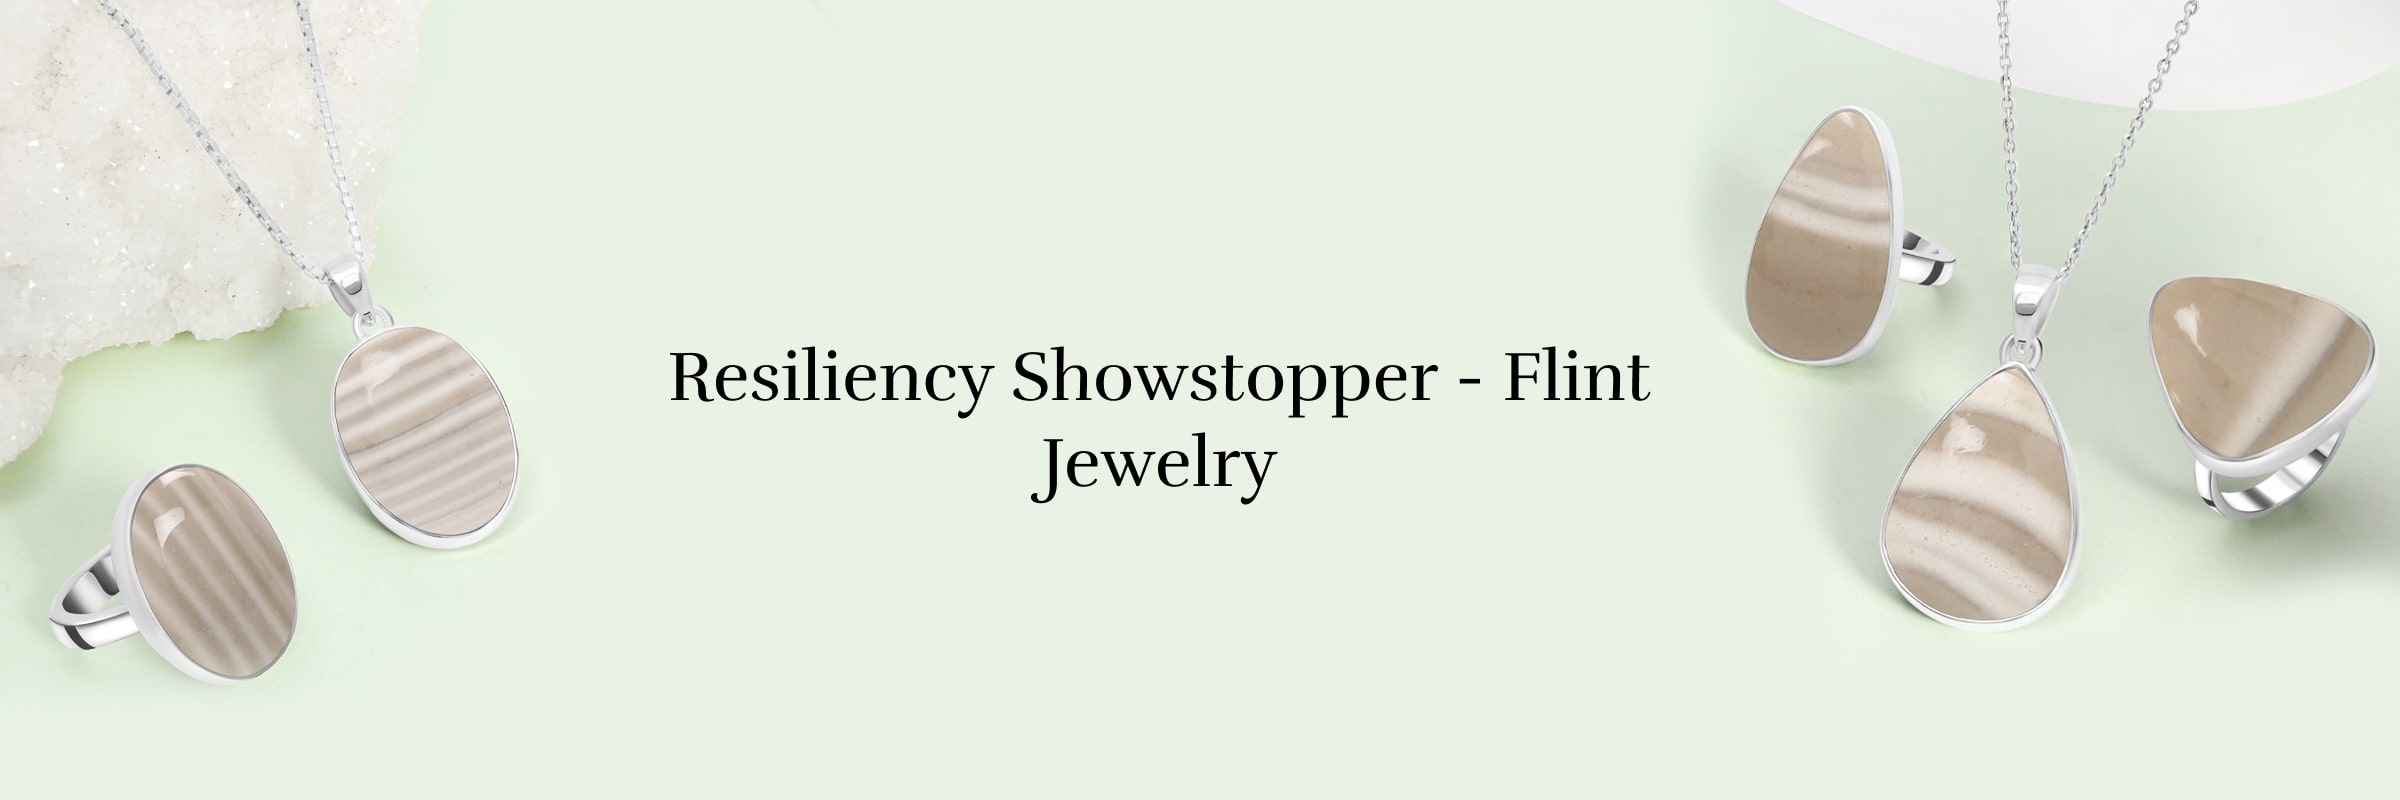 Flint Jewelry